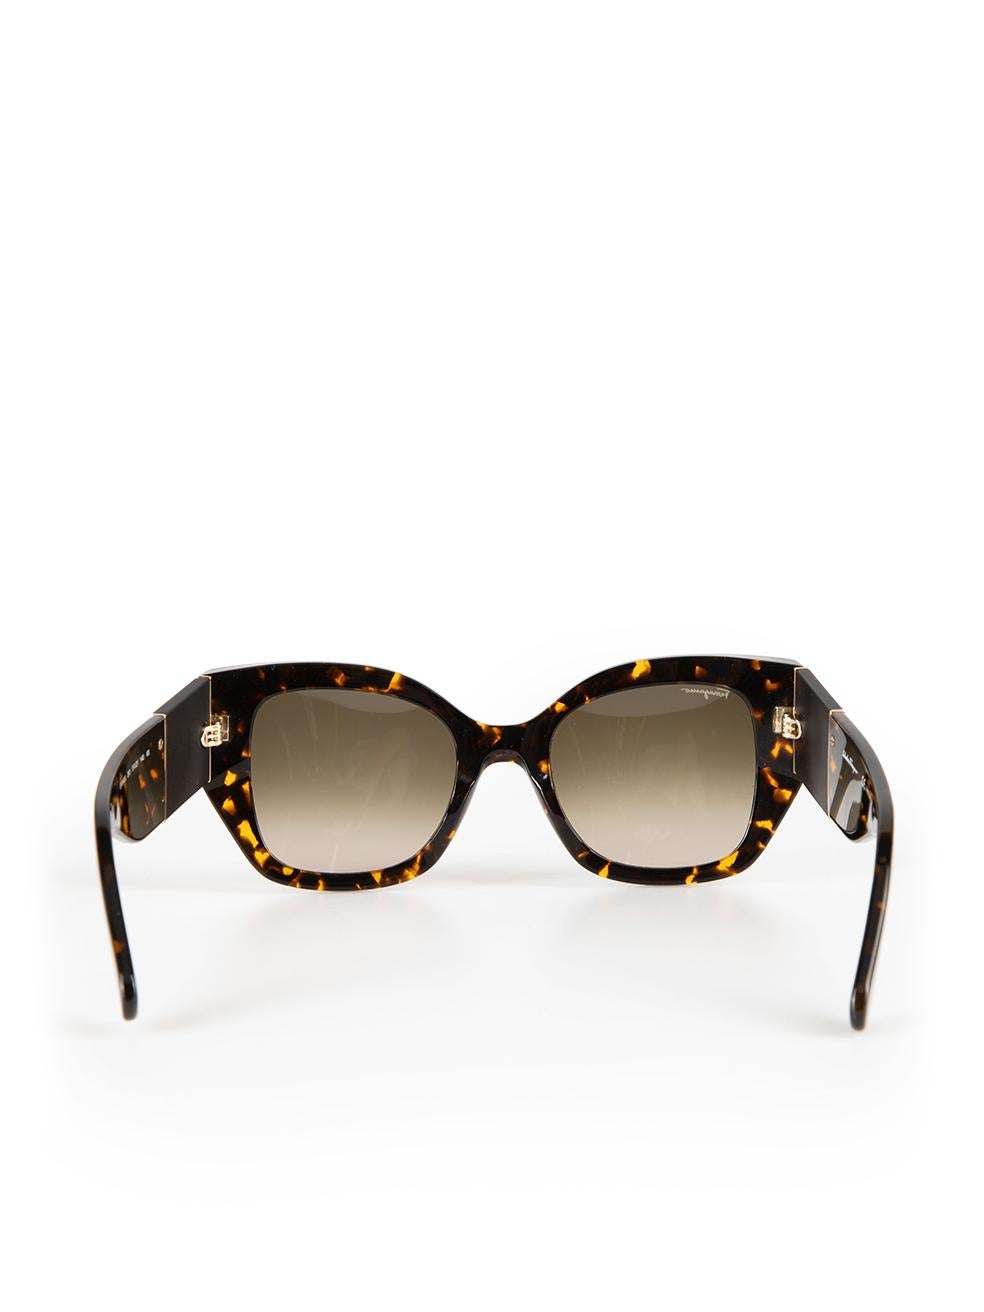 Salvatore Ferragamo Vintage Tortoise Square Sunglasses In New Condition In London, GB